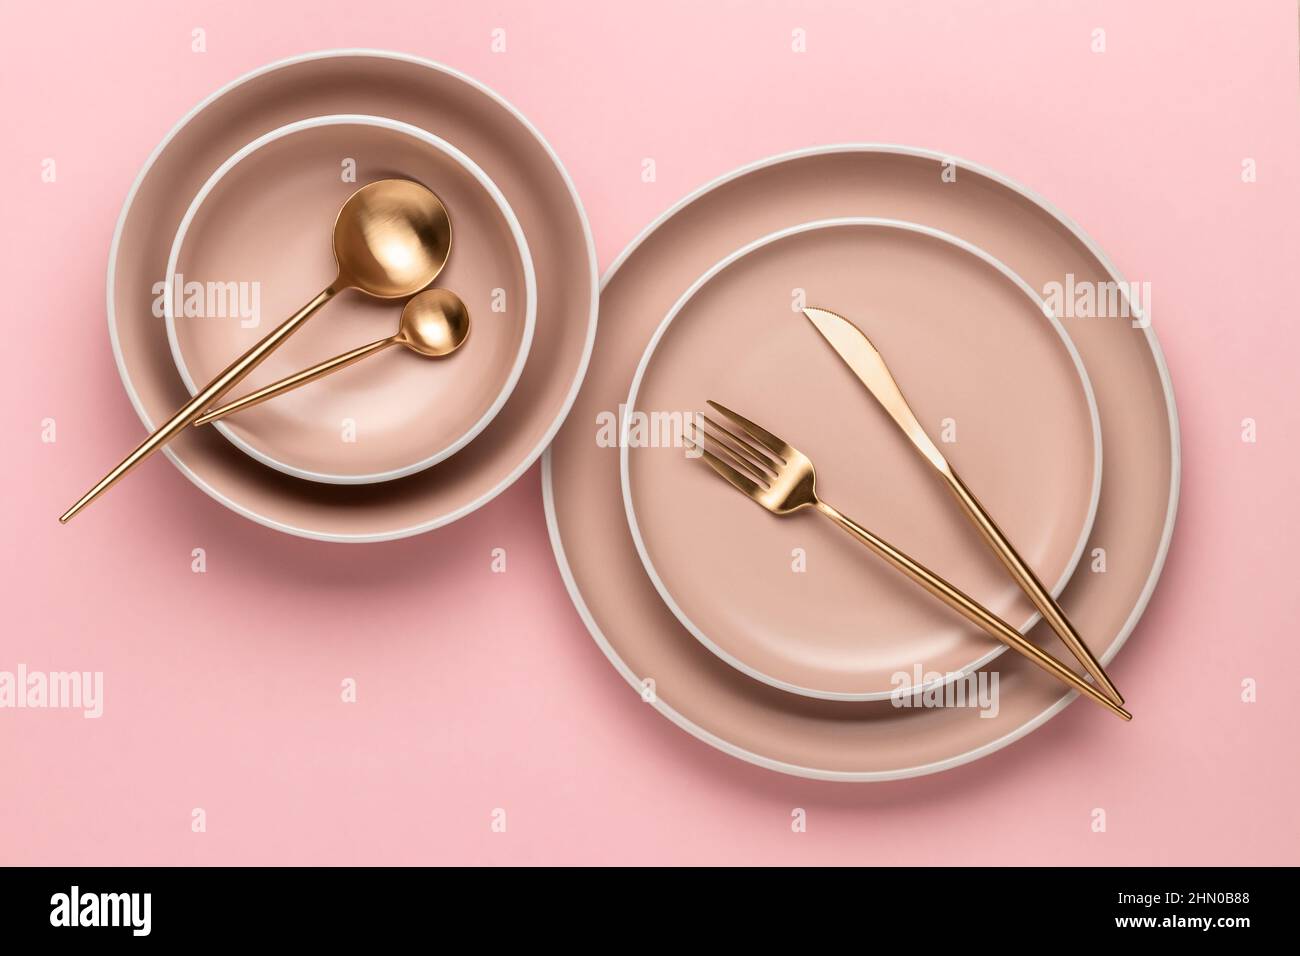 Geschirr und Utensilien zum Servieren und Essen von Mahlzeiten. Beigefarbene runde Teller mit Rand und goldenes Besteck auf rosa Hintergrund, Draufsicht. Moderne Keramik cr Stockfoto